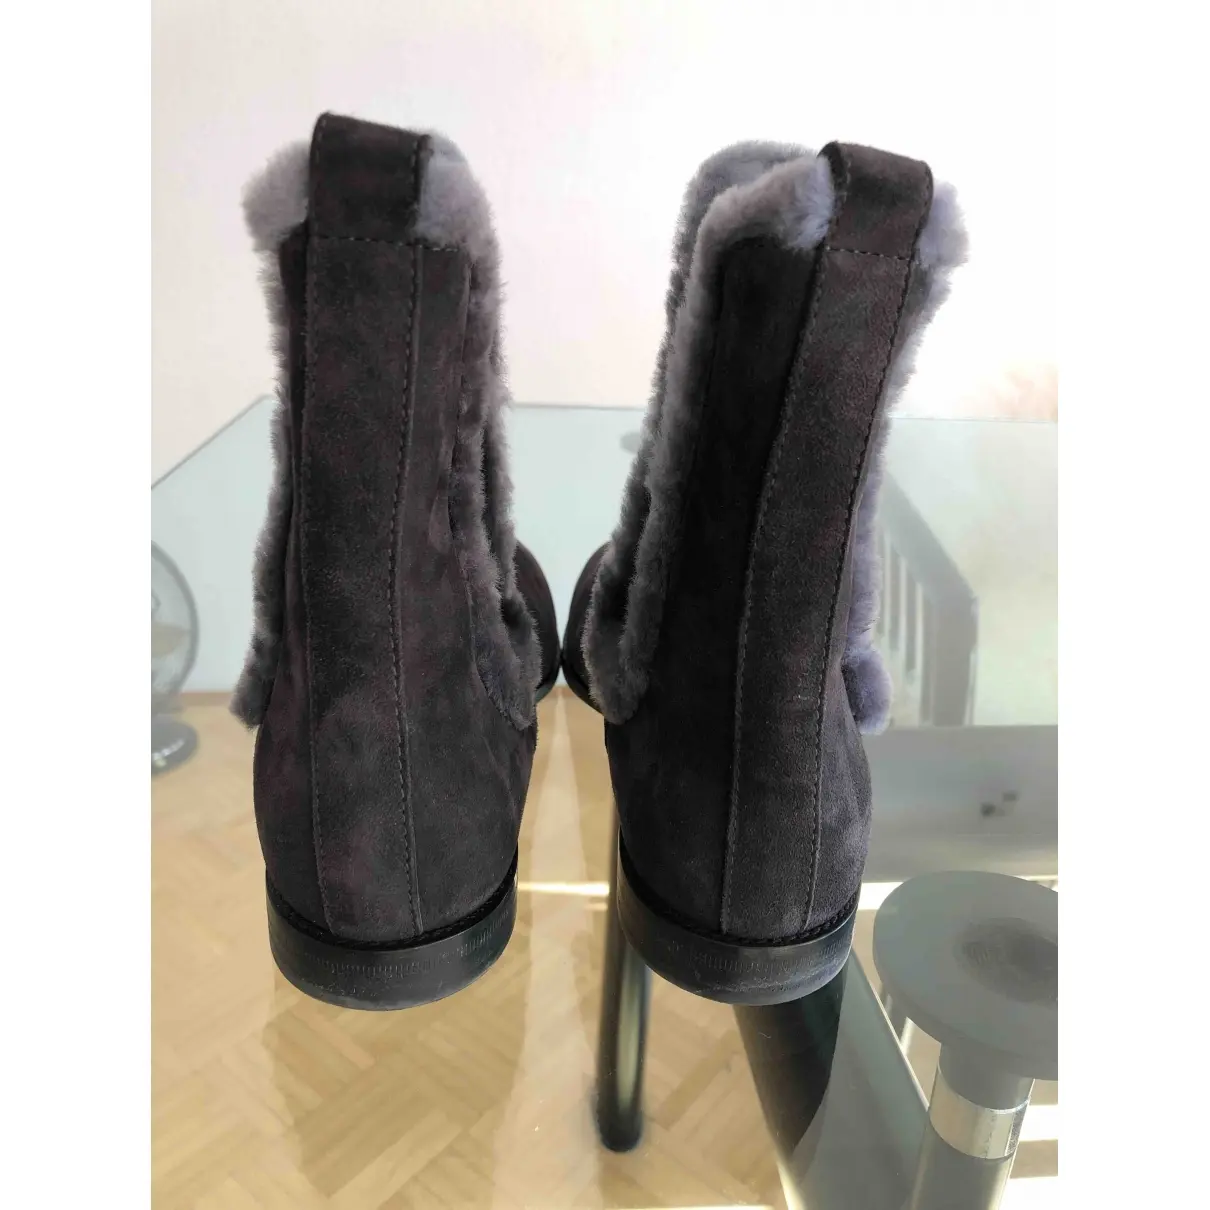 UNÜTZER Snow boots for sale